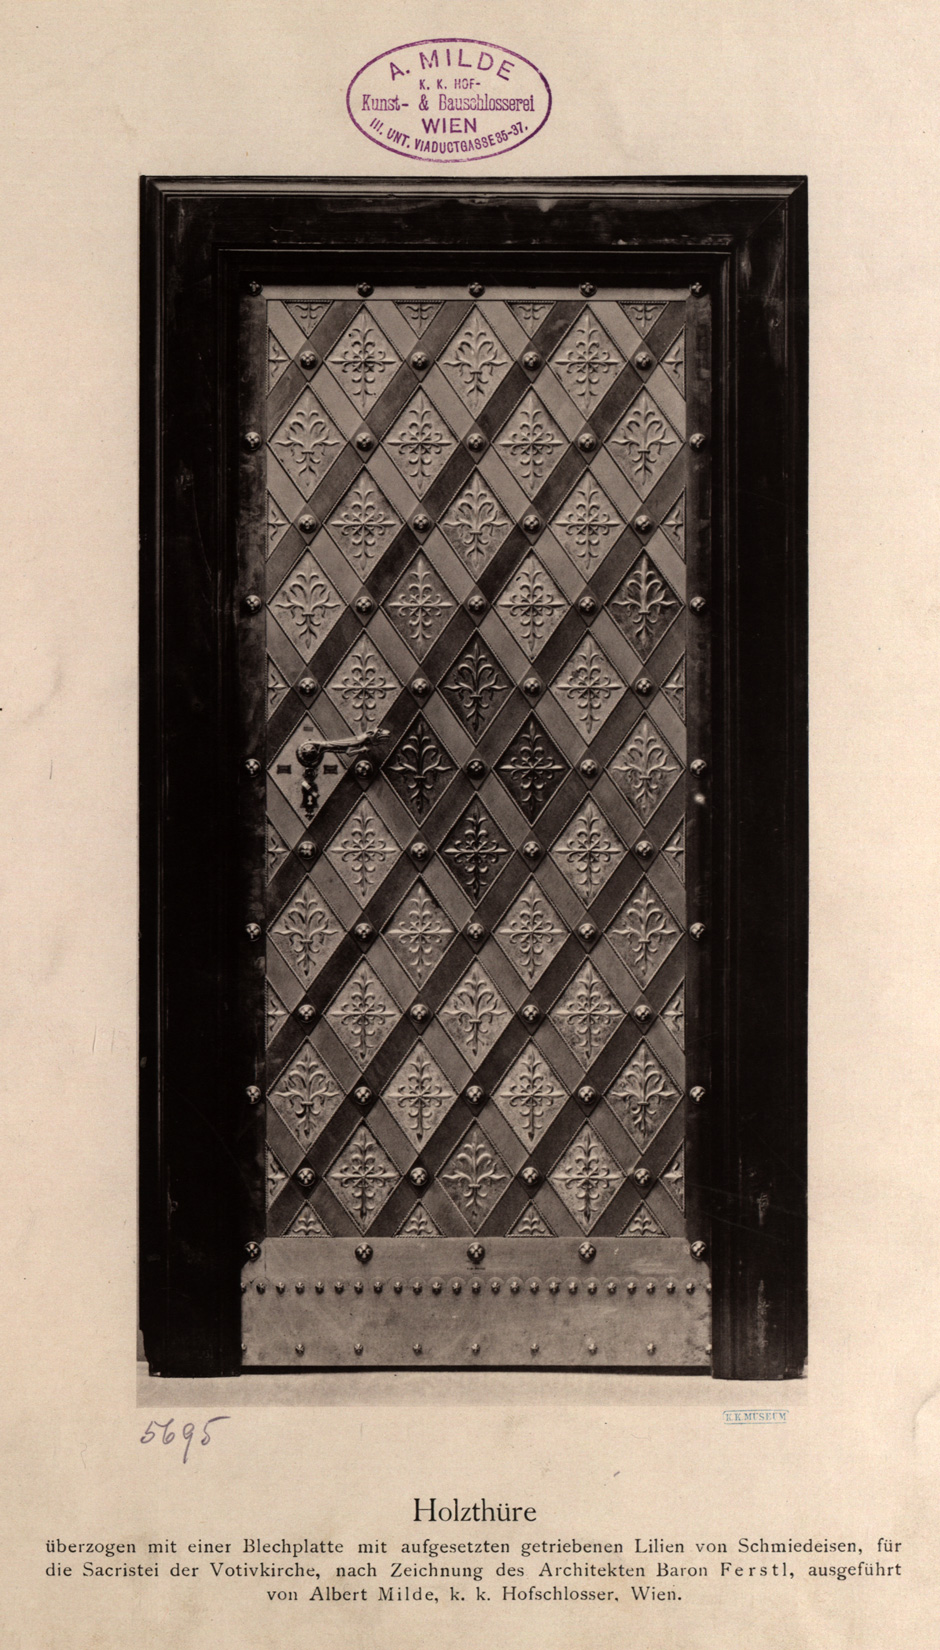 Holztür überzogen mit einer Blechplatte mit aufgesetzten getriebenen Lilien von Schmiedeeisen